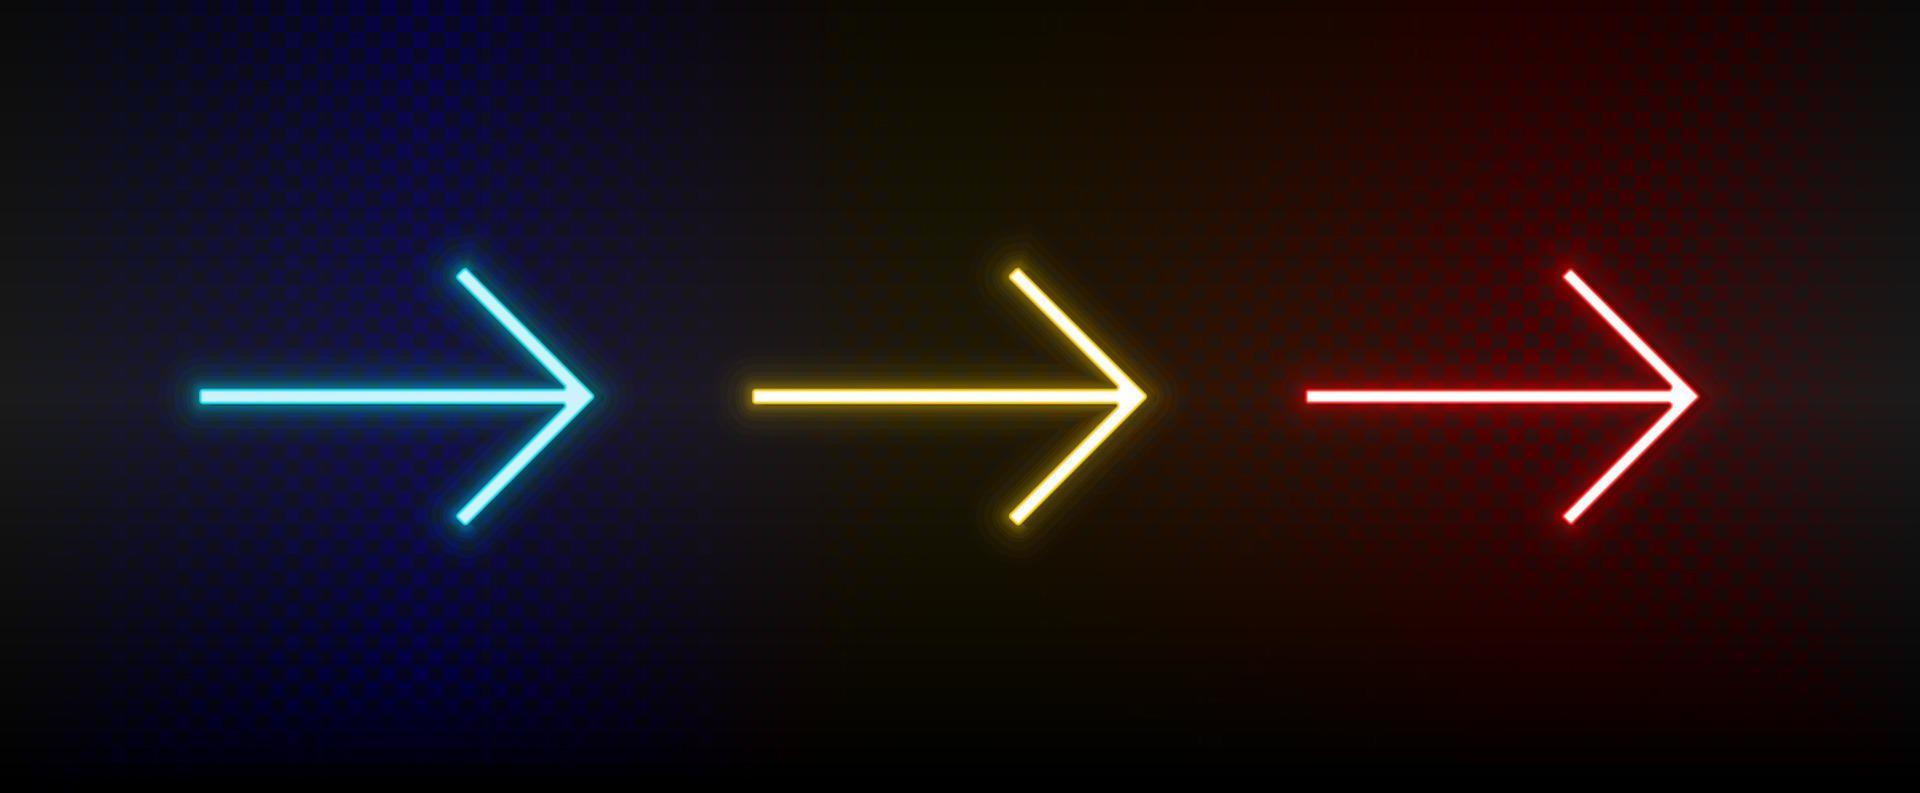 neon ikoner. ui pil. uppsättning av röd, blå, gul neon vektor ikon på mörkna bakgrund